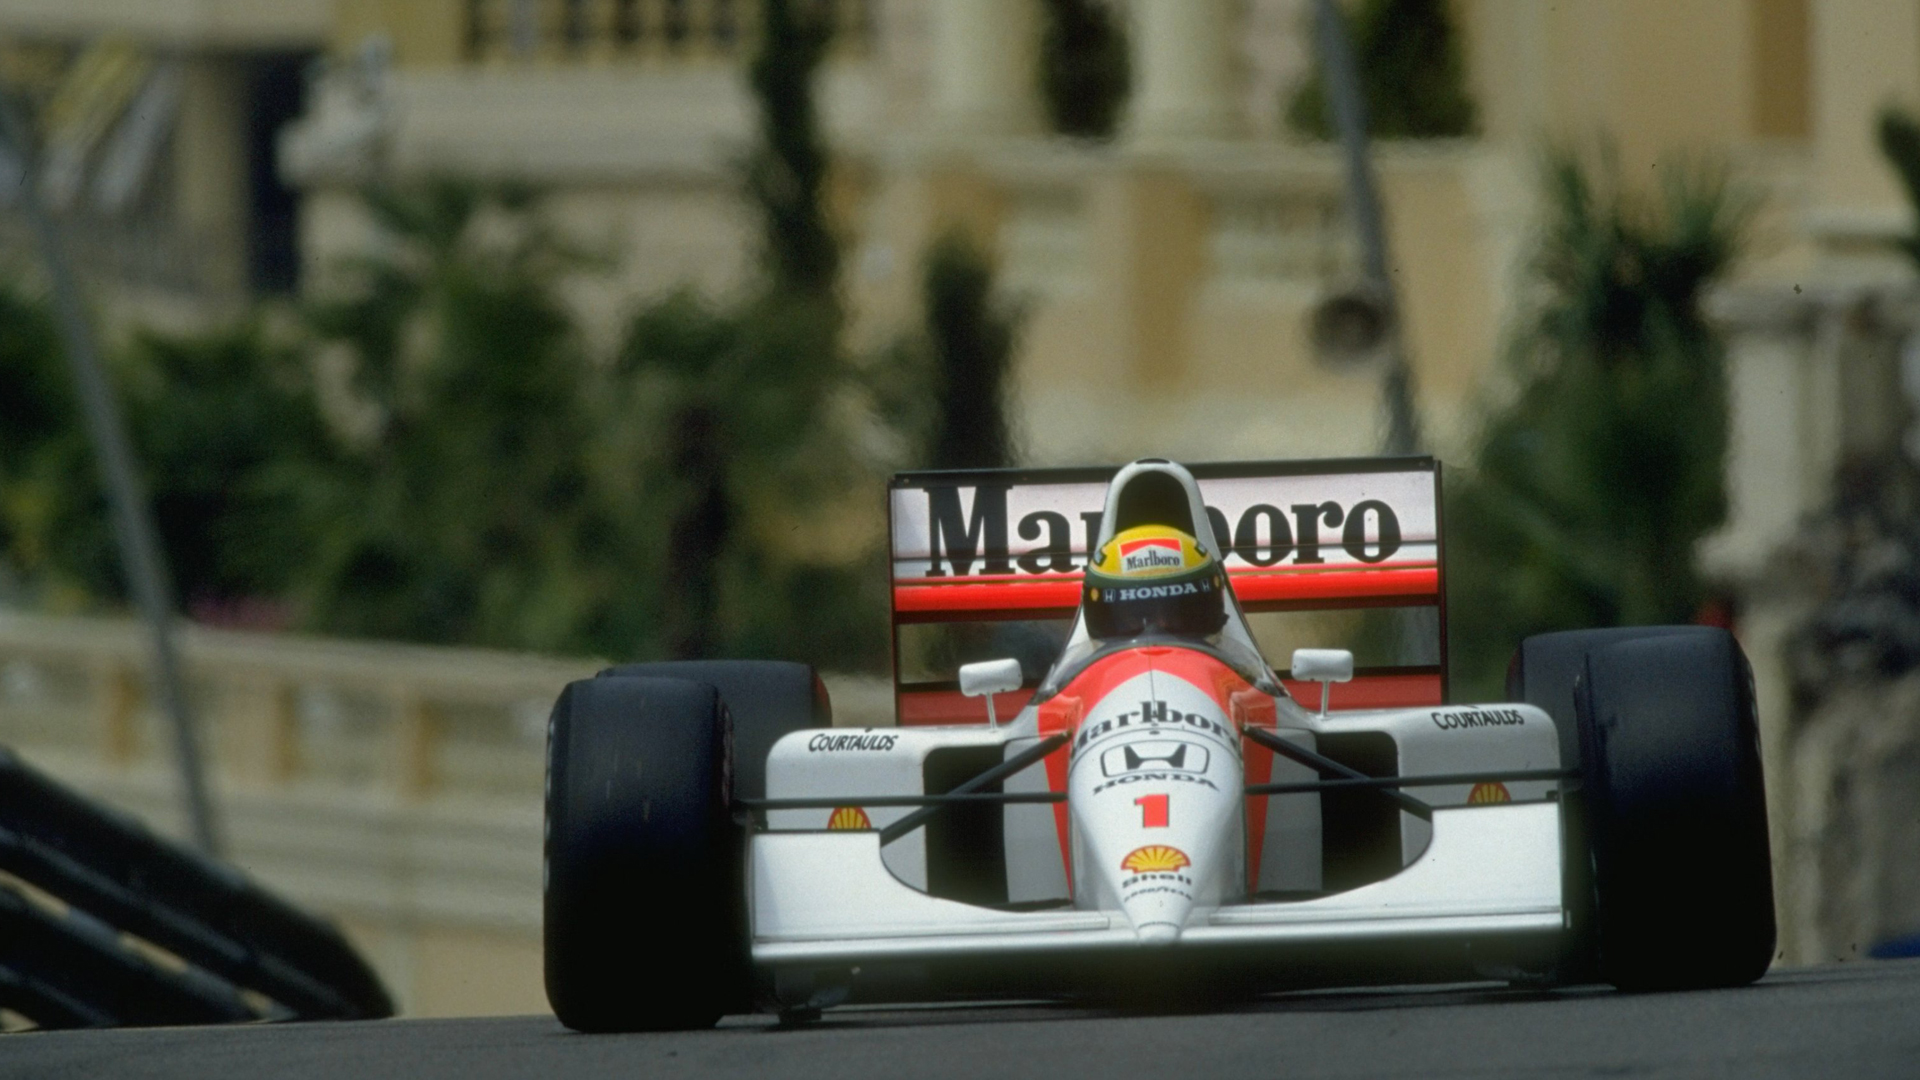 Senna Monaco wallpaper   674577